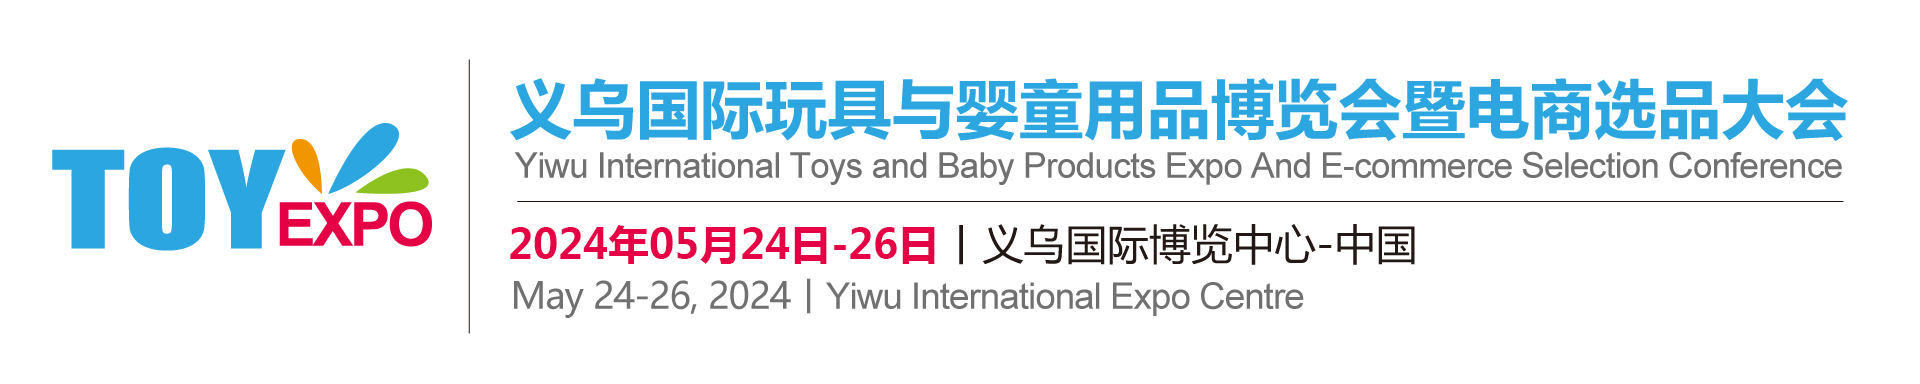 2024义乌国际玩具与婴童用品博览会暨电商选品大会